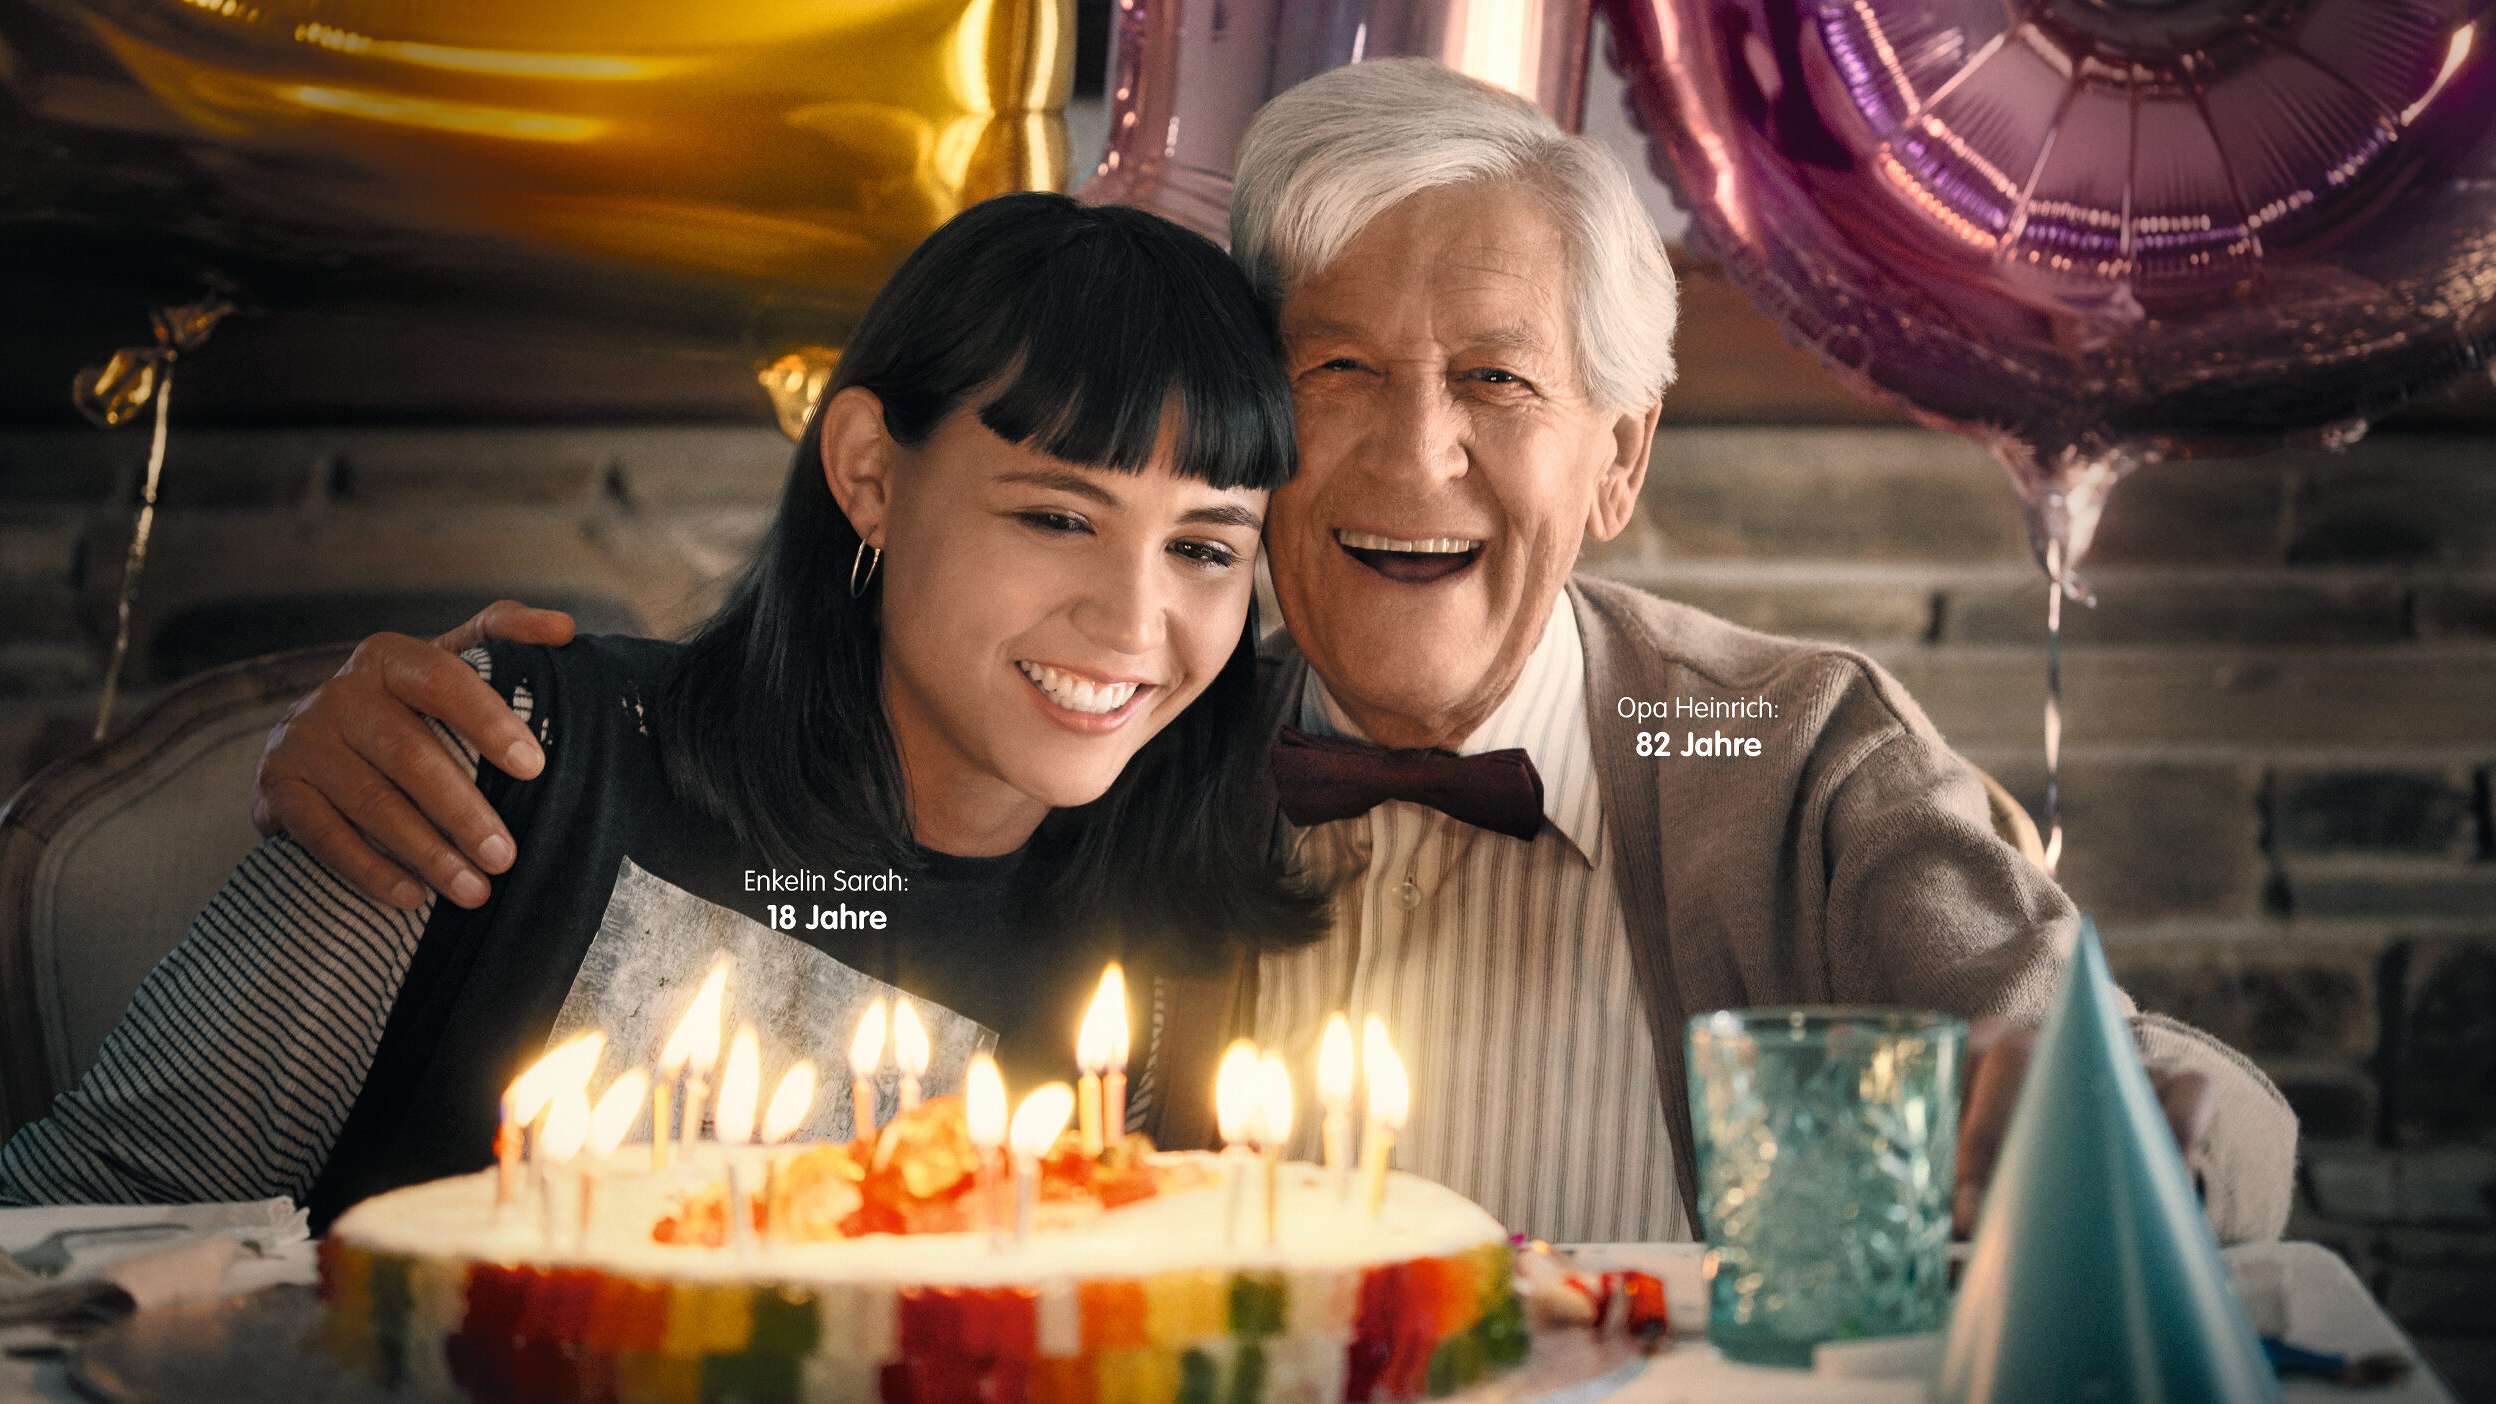 Enkelin und Großvater freuen sich über Kuchen mit Kerzen und Goldbären.